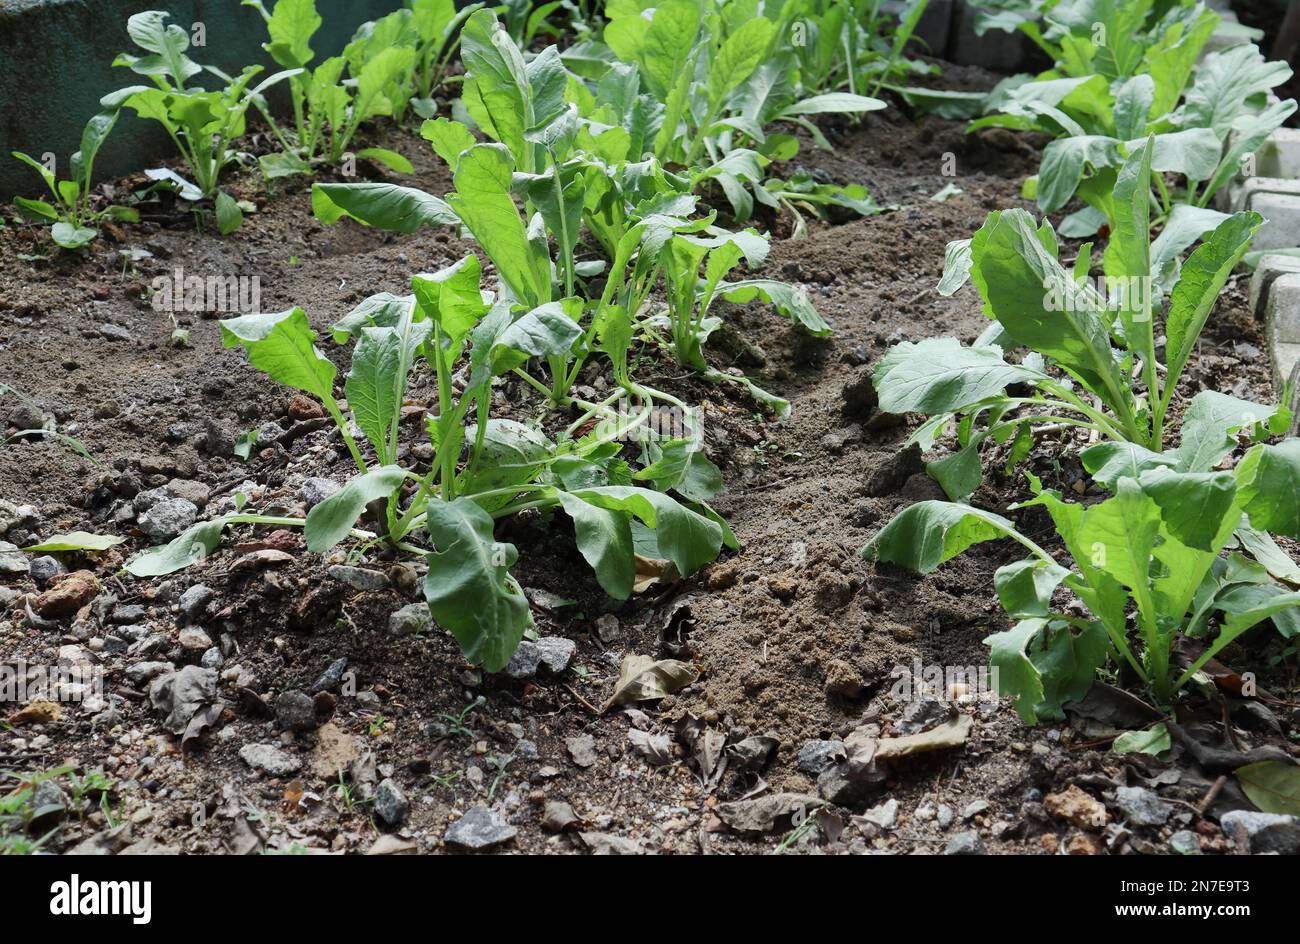 Le piante coltivate di rano crescono su terreno accidentato in filari in un giardino urbano Foto Stock